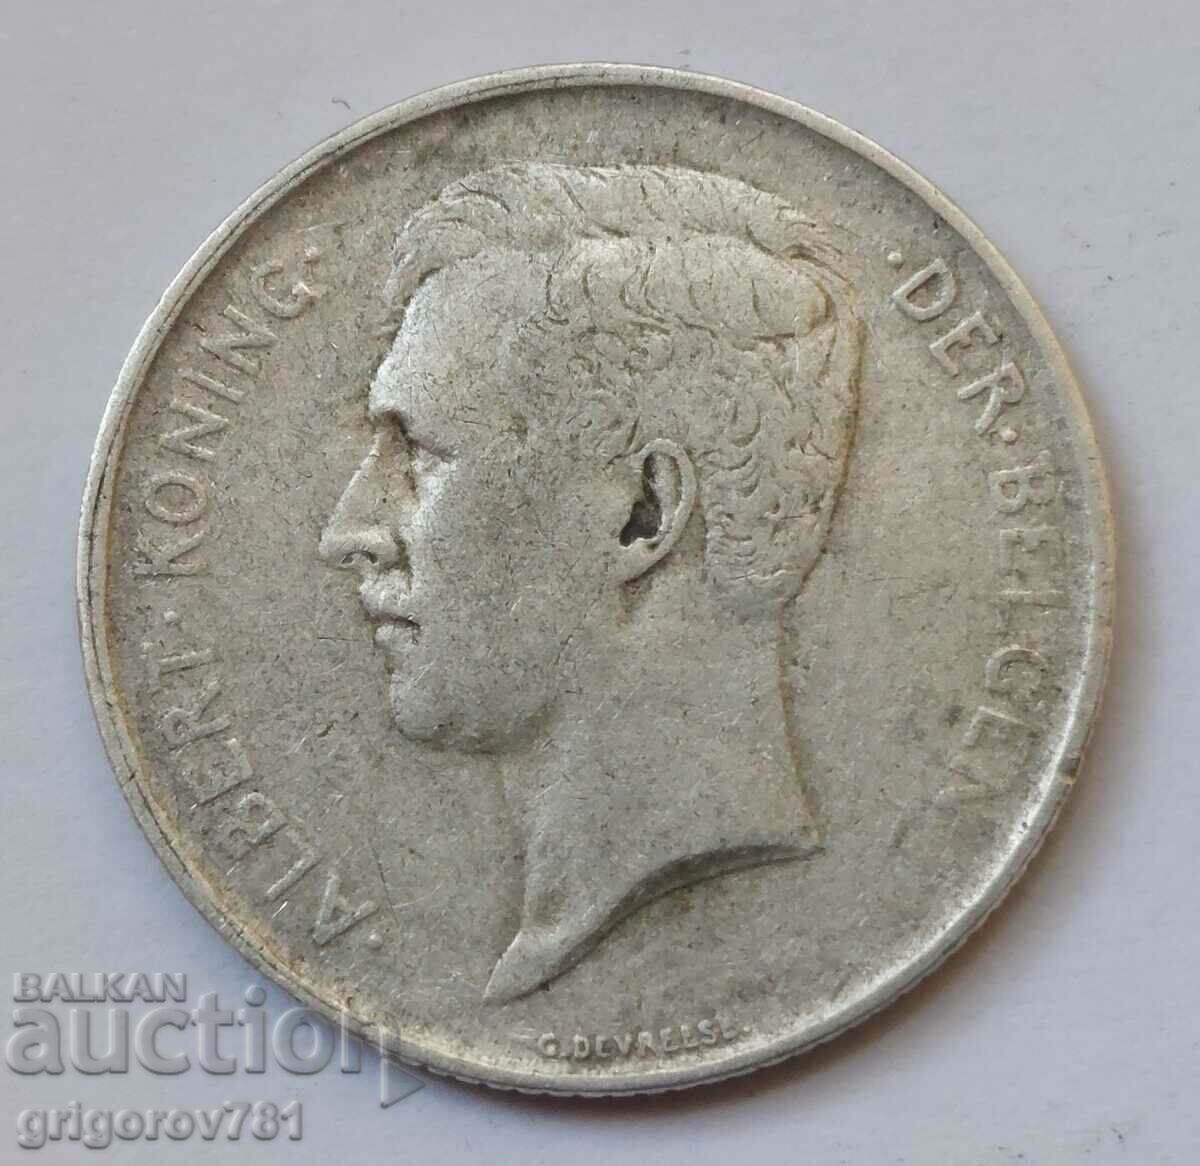 1 franc silver Belgium 1910 - silver coin #62